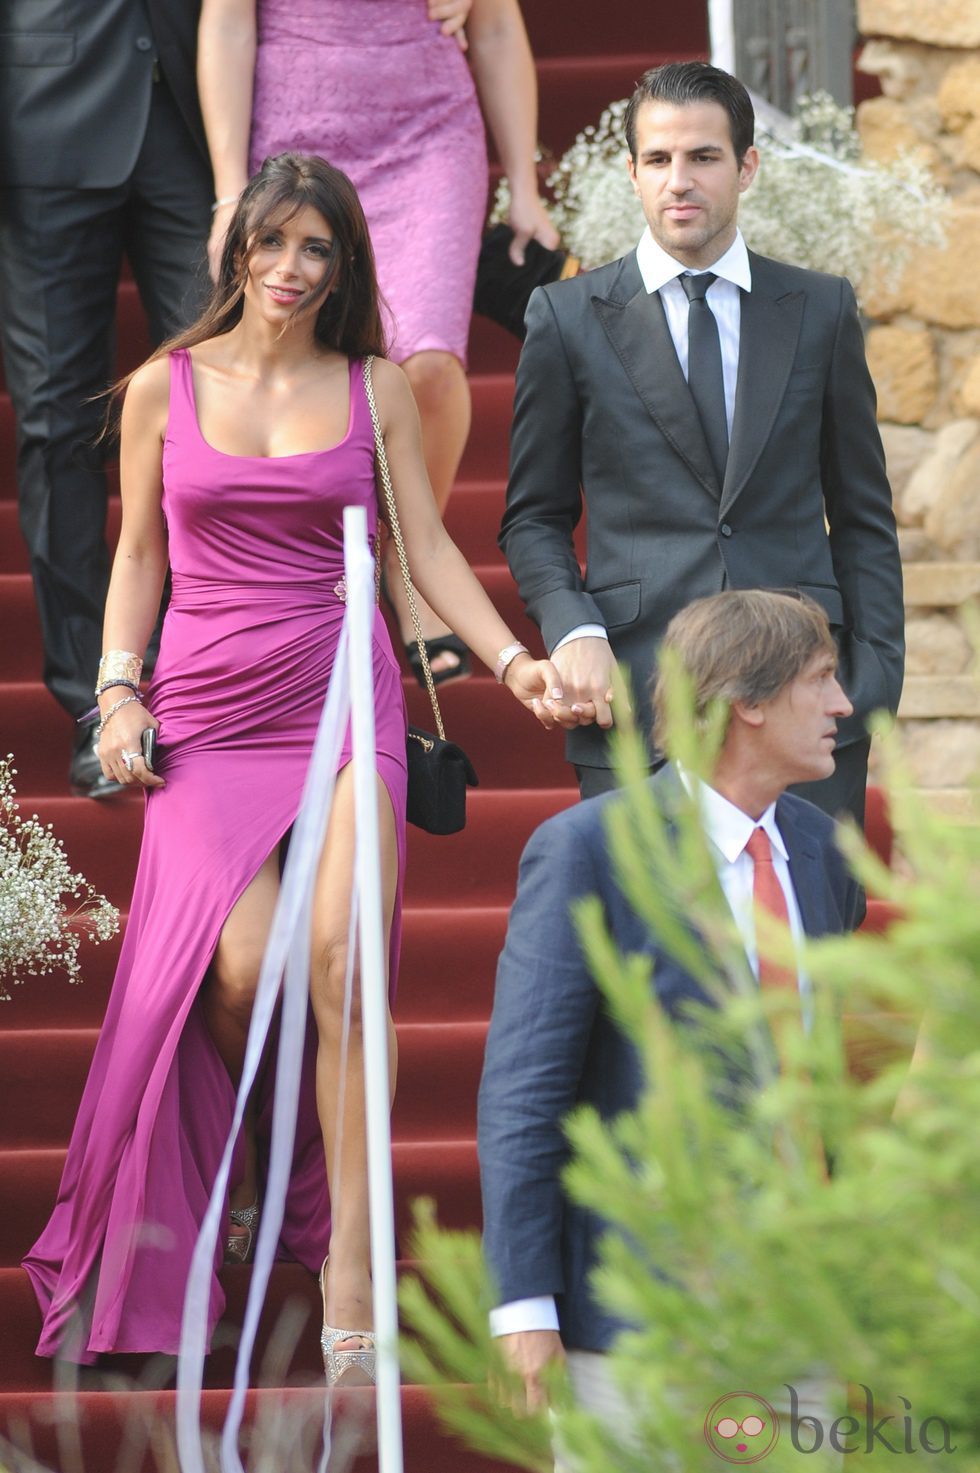 Daniella Semaan con un vestido fucsia acompañada de Cesc Fàbregas